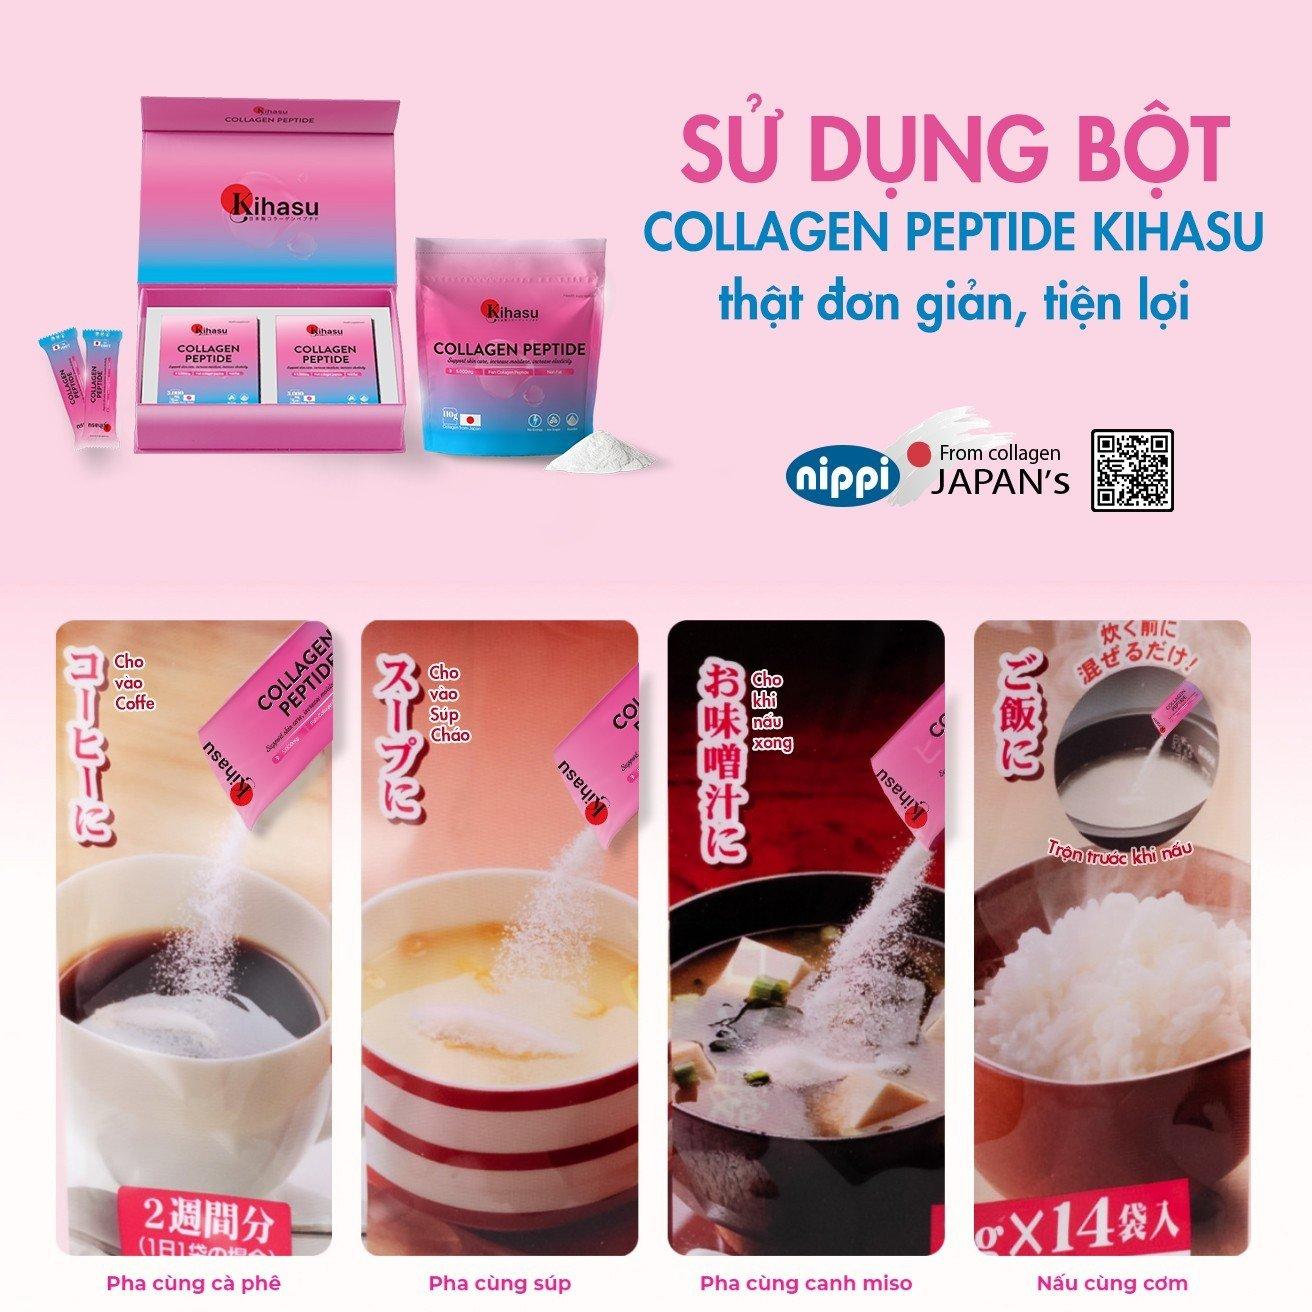 Thương hiệu Kihasu collagen “trình làng” thị trường Việt Nam dòng sản phẩm collagen đột phá - 3